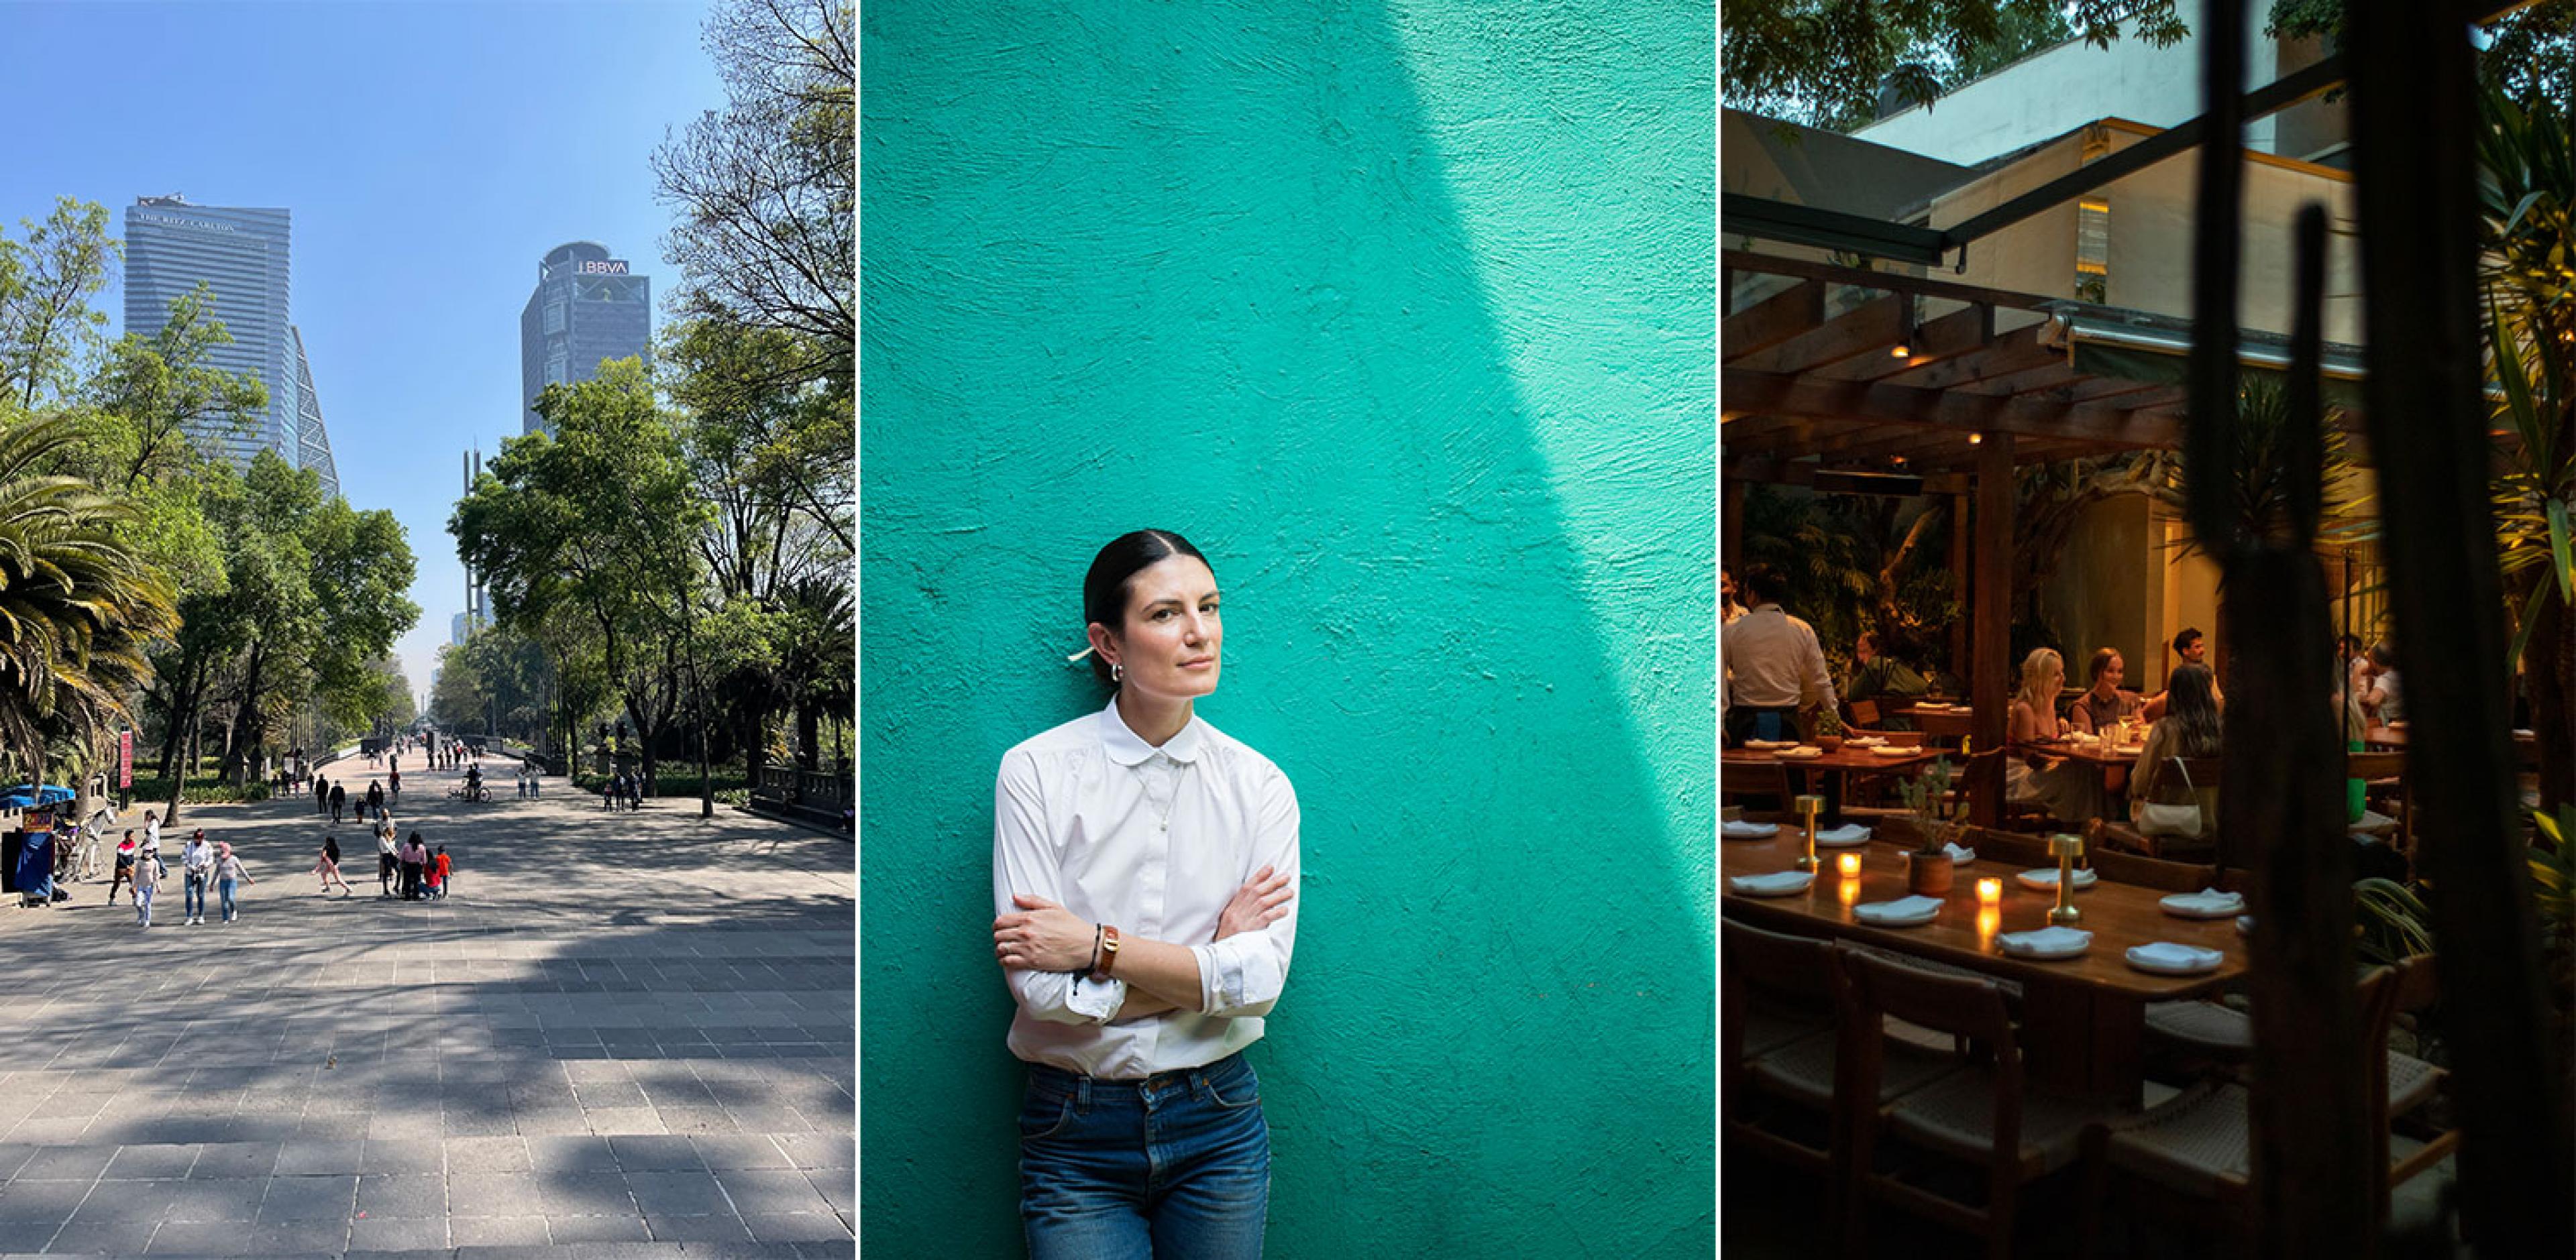 mexico city scenes and olivia villanti